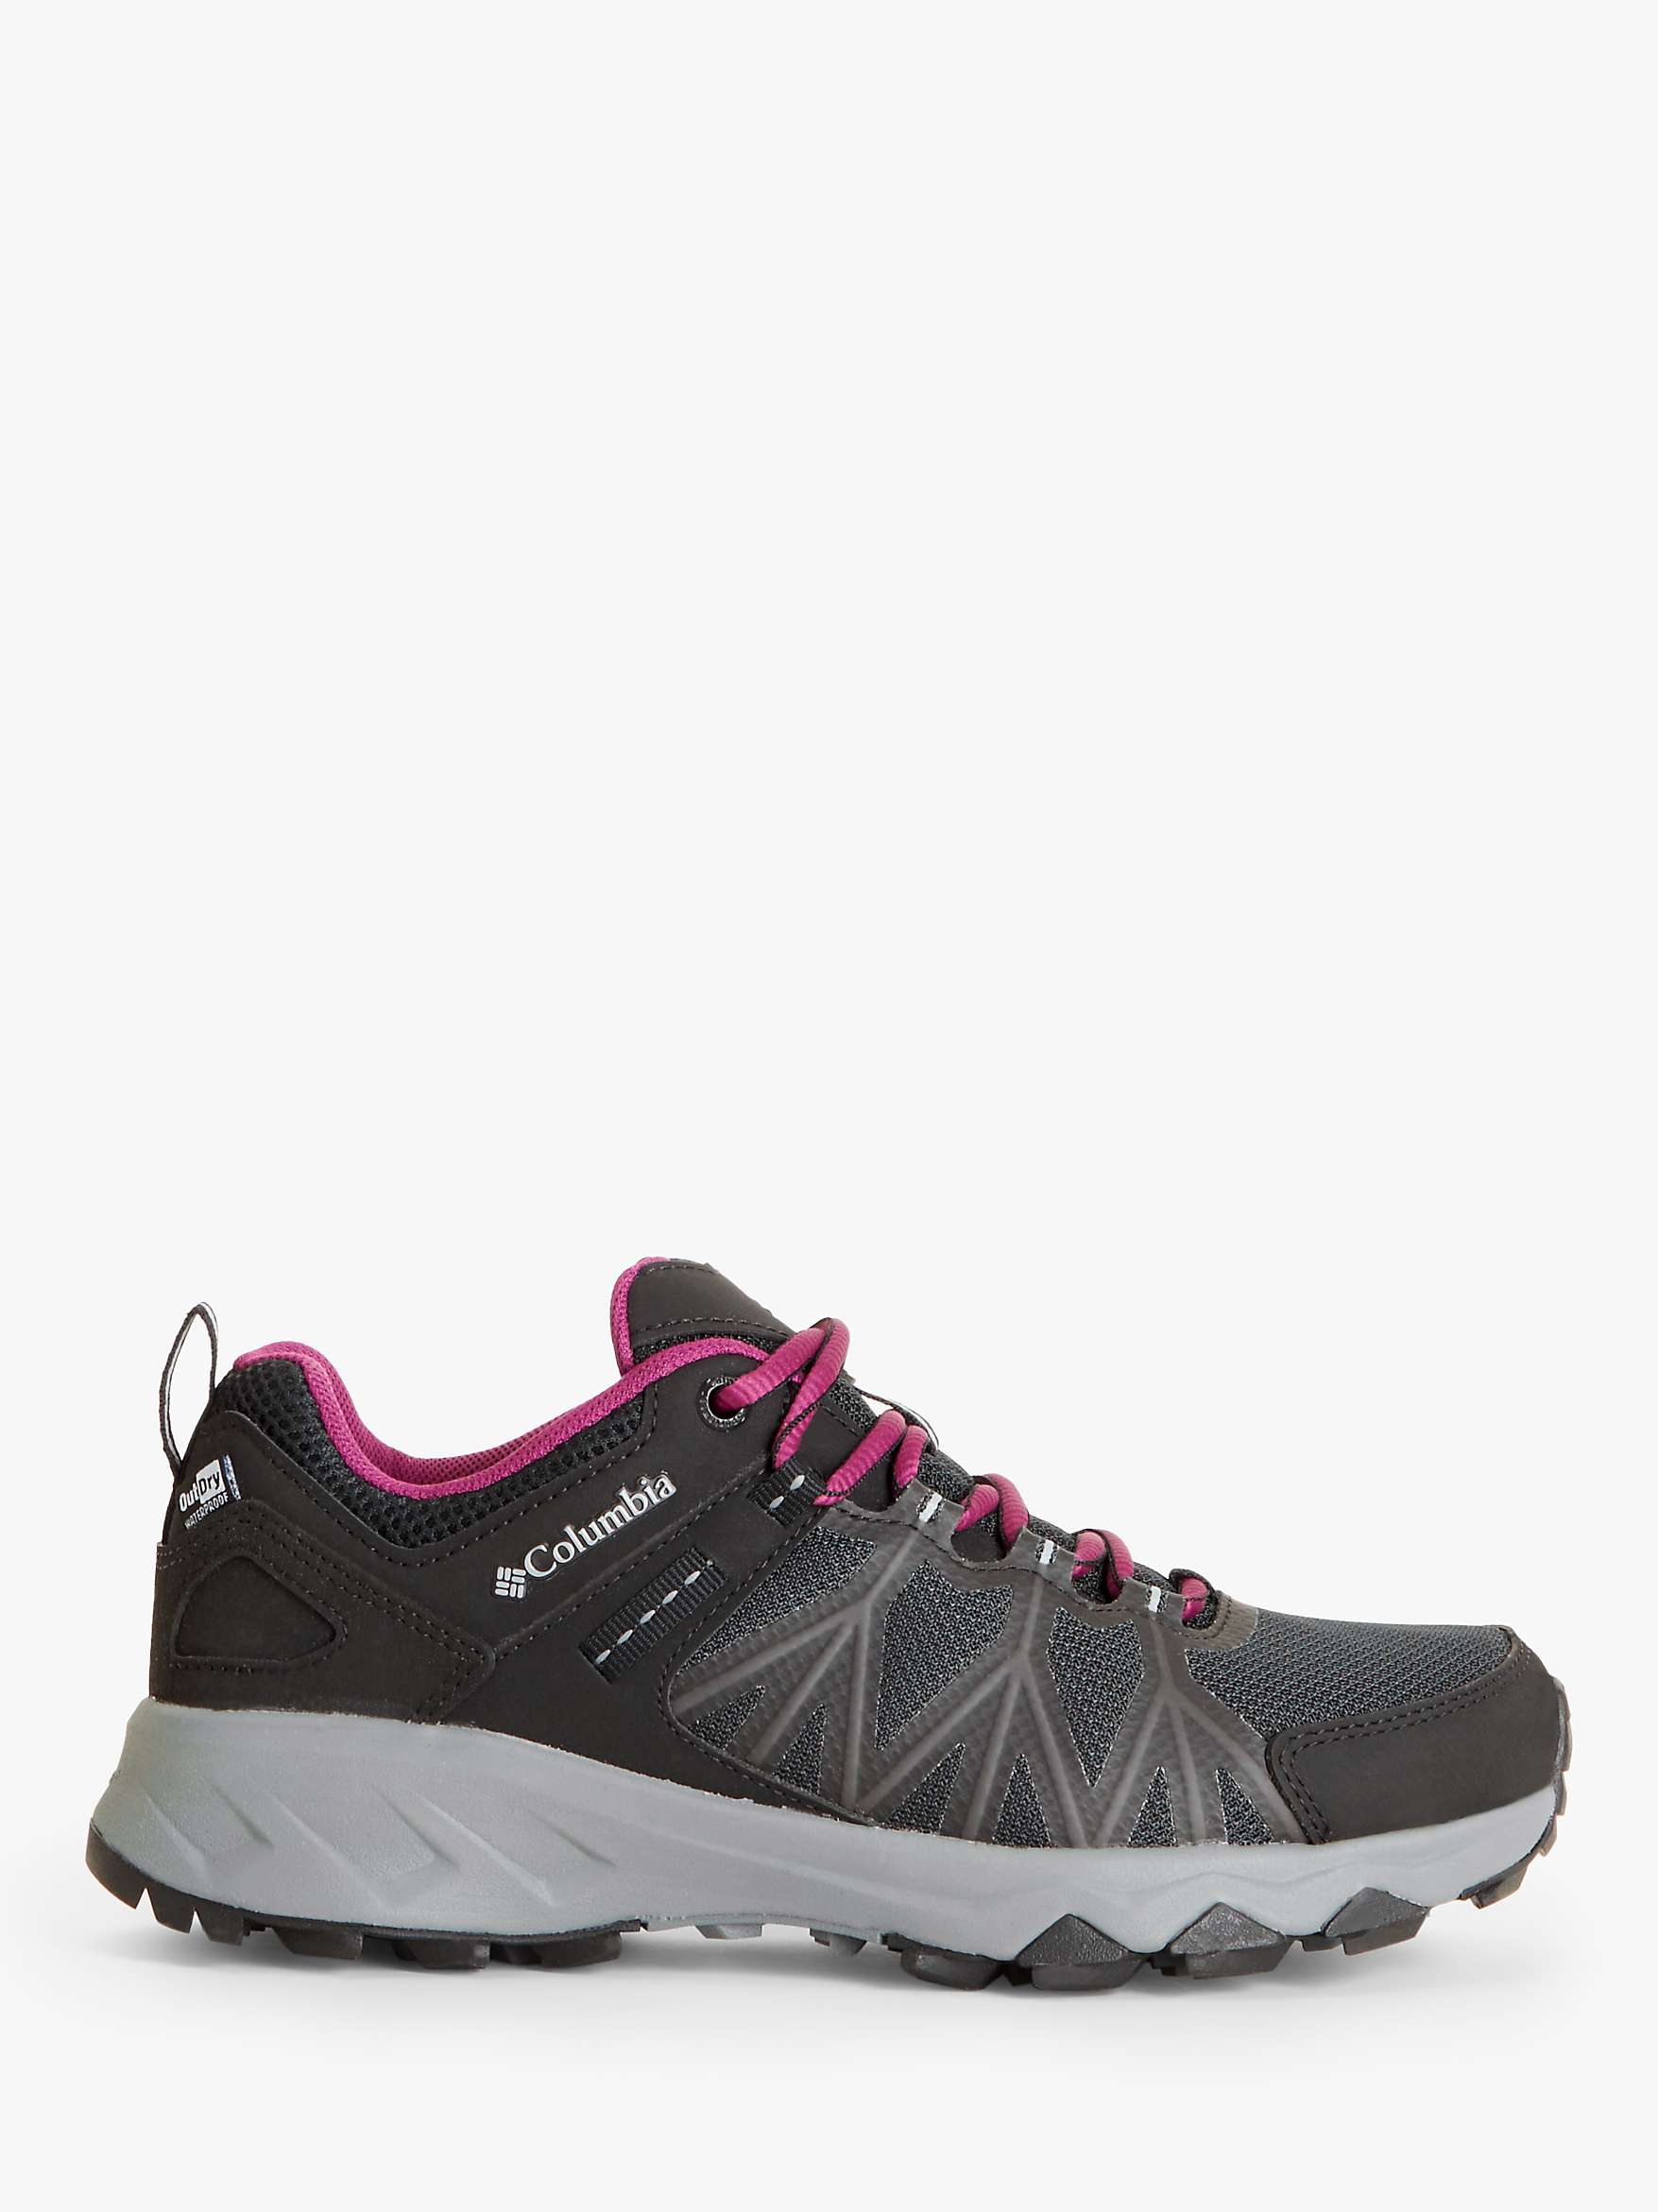 Buy Columbia Women's Peakfreak II Mid Outdry Walking Shoes, Black/Grey Steel Online at johnlewis.com